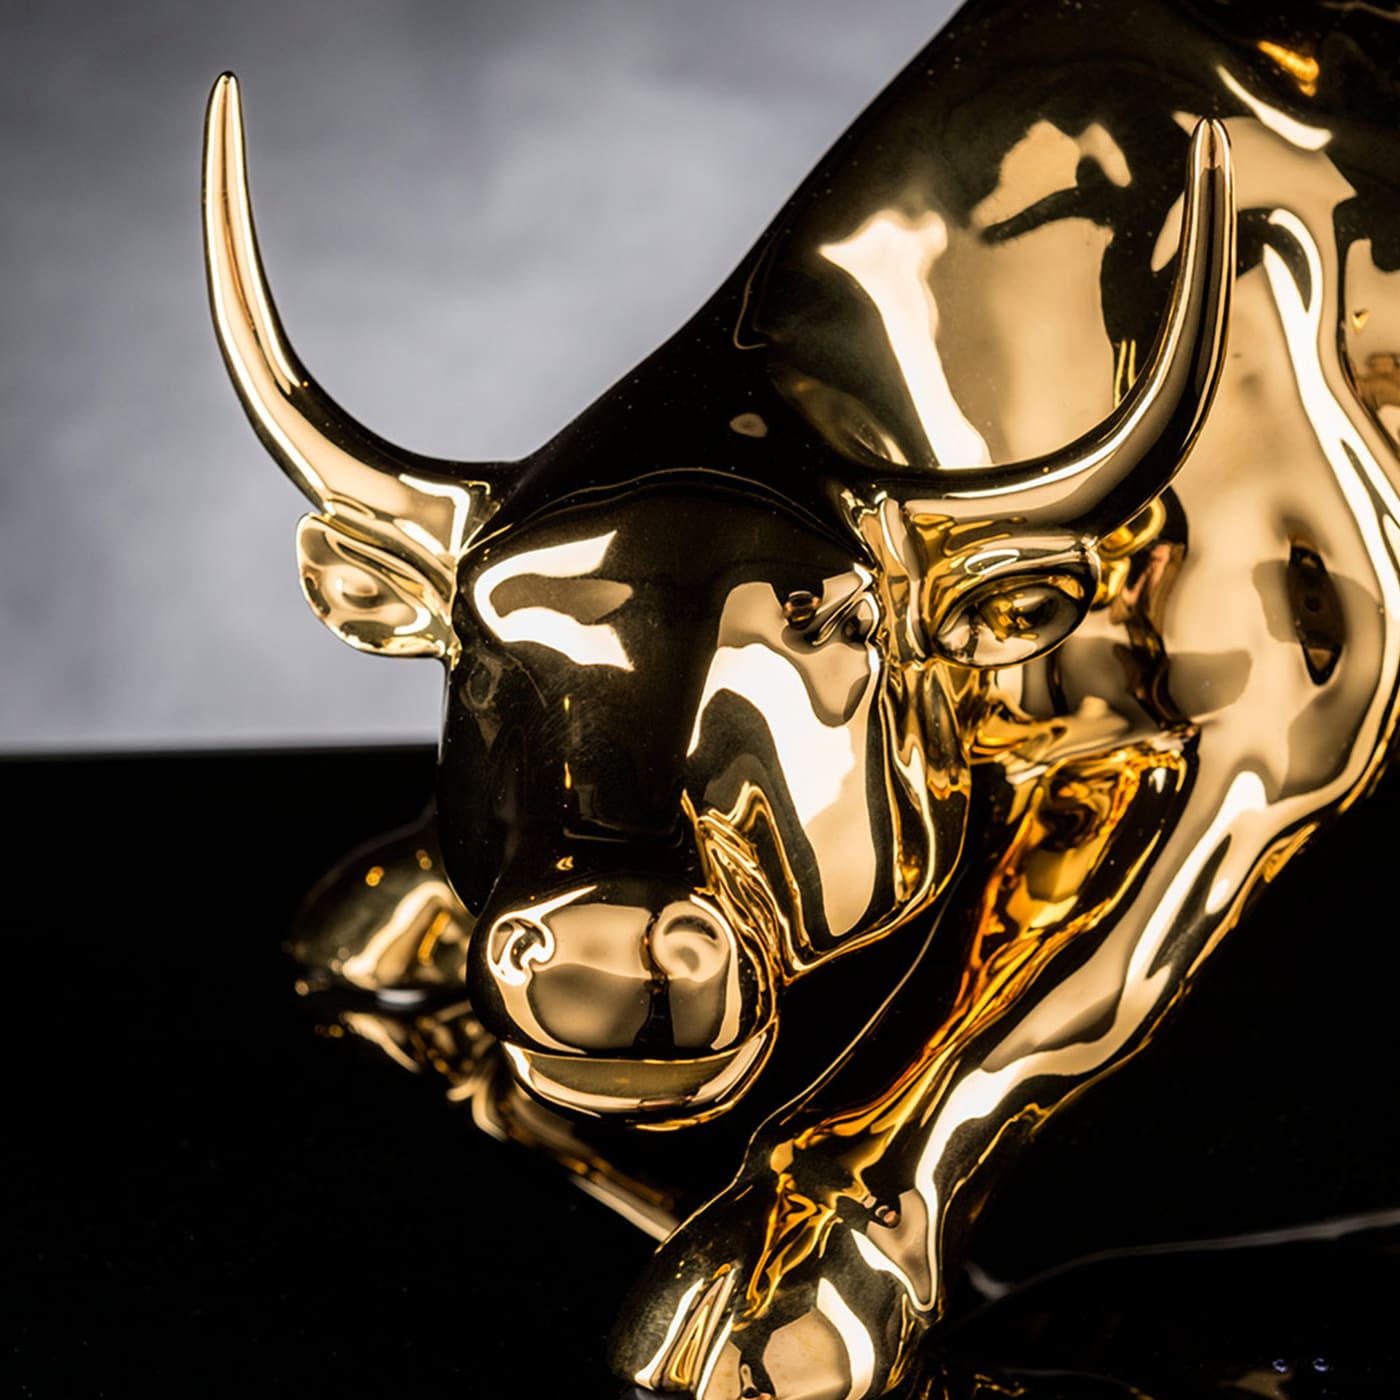 Wall Street Bull Large Golden Sculpture - VGnewtrend